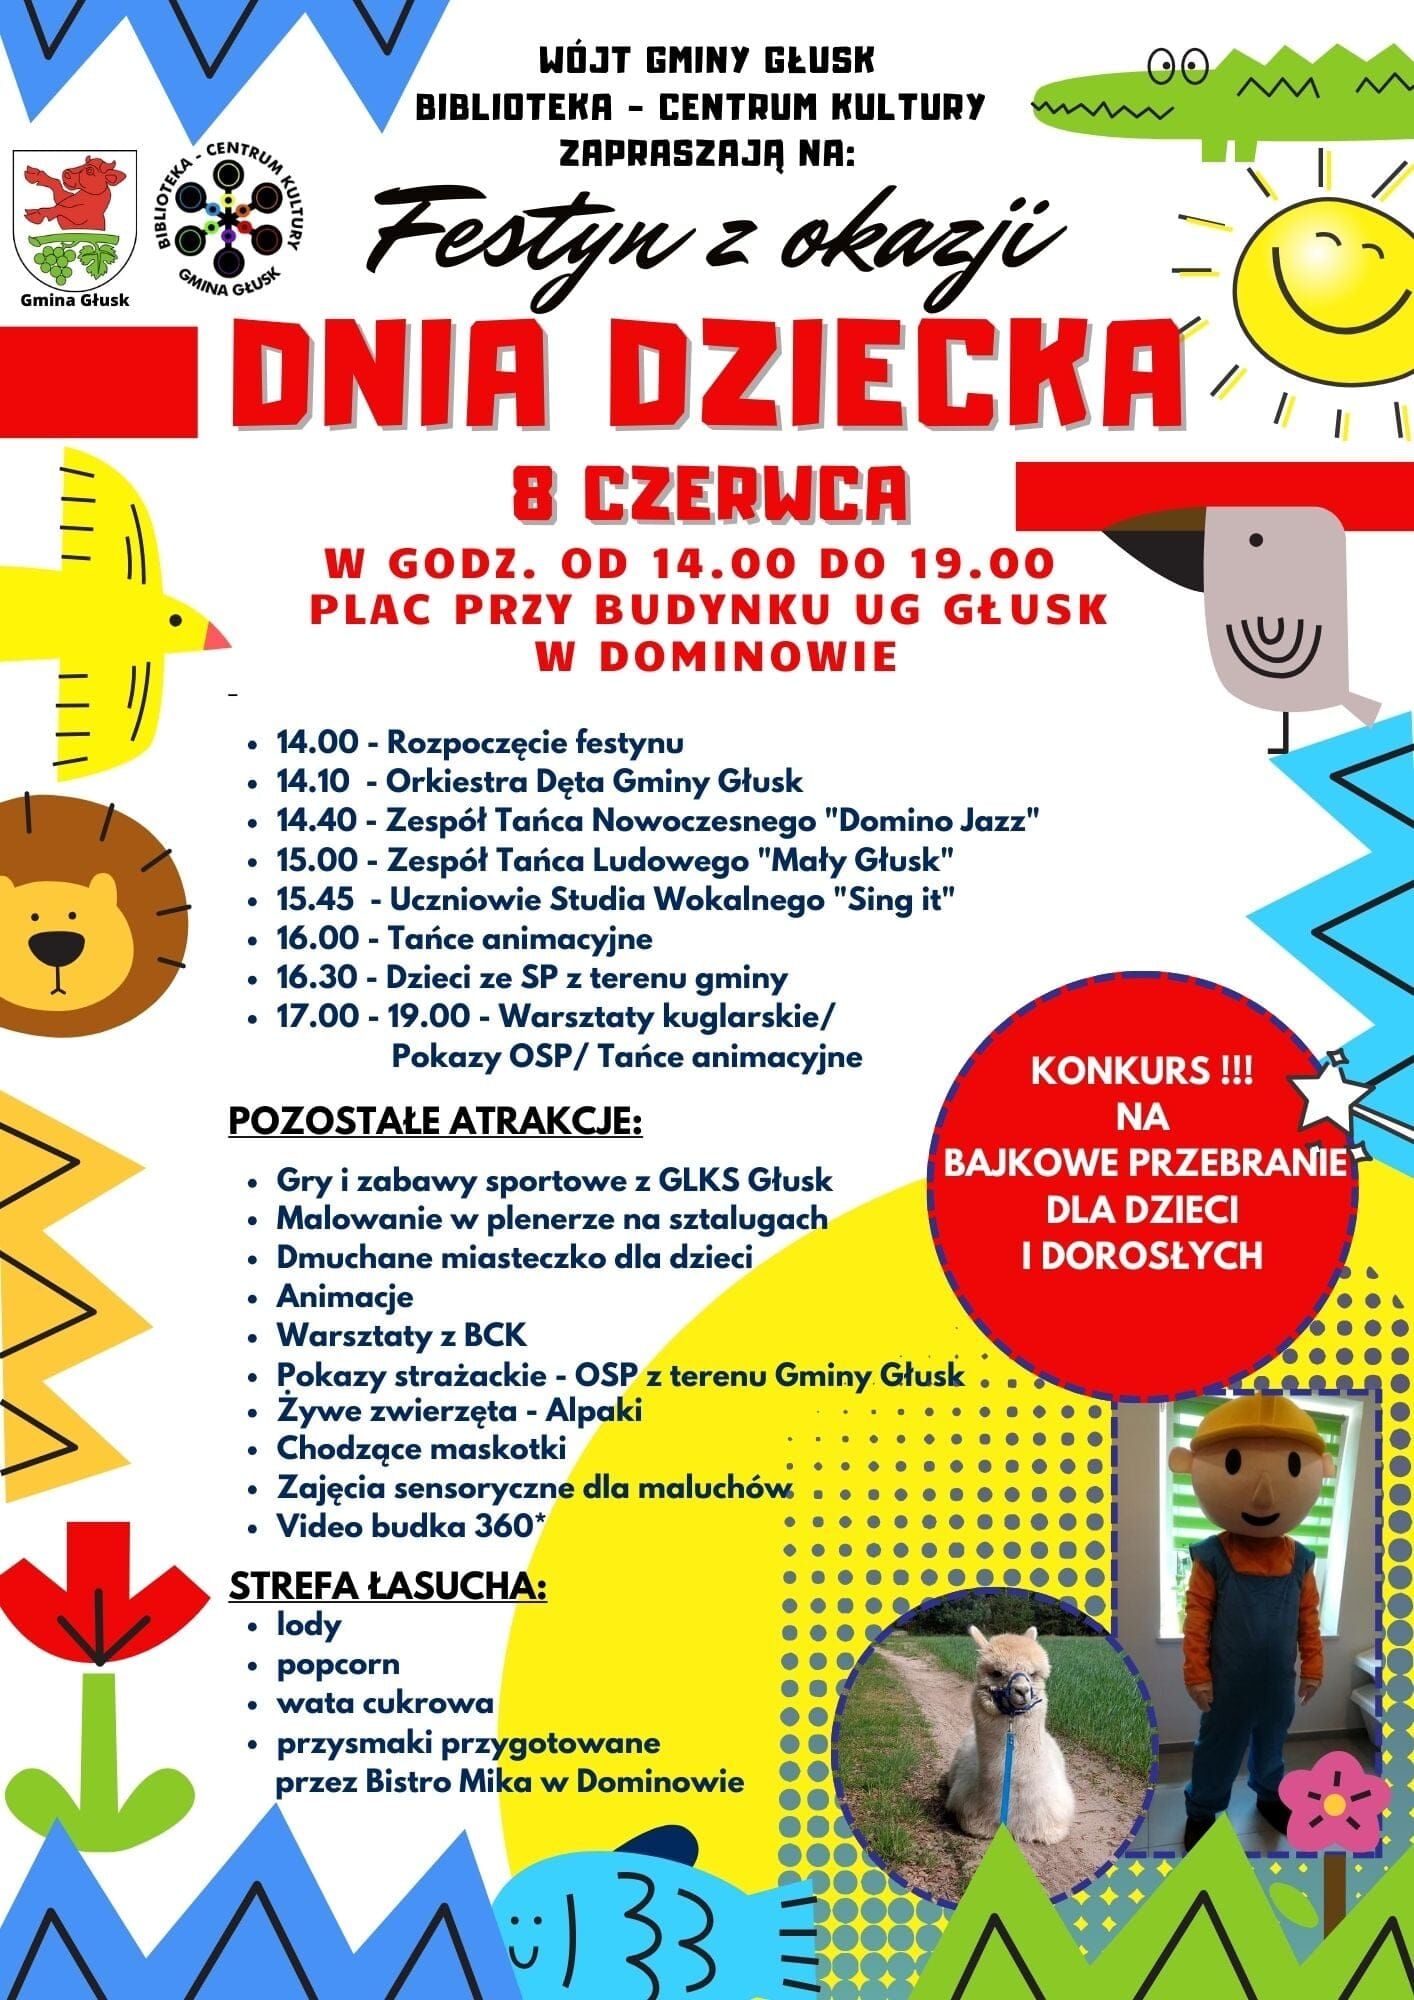 Plakat informacyjny wydarzenia "Festyn z okazji Dnia Dziecka" z grafiką balonów, prezentów i dwóch postaci z kreskówki, zawierający szczegóły programu i atrakcje dla dzieci.